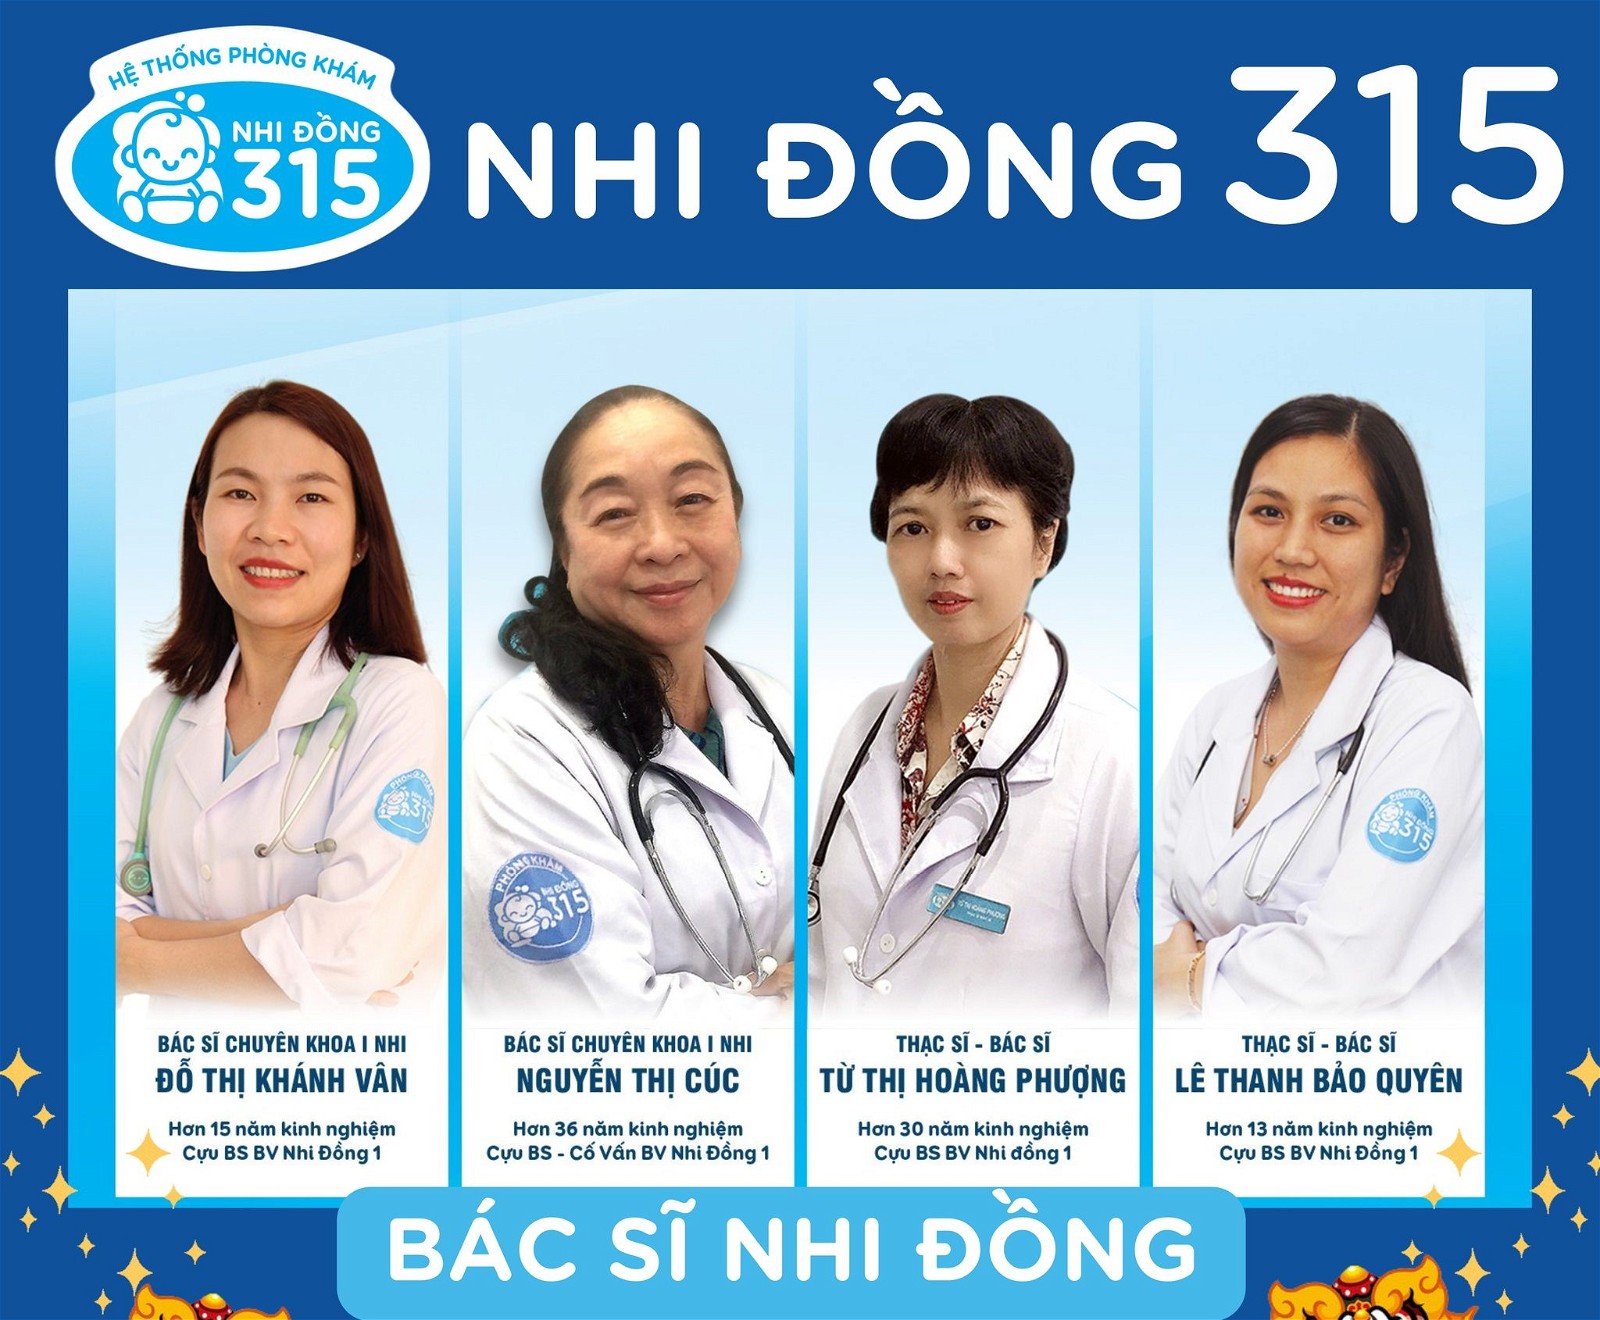 100% bác sĩ đến từ các bệnh viện lớn như Nhi Đồng 1, 2 và Nhi Đồng Thành Phố